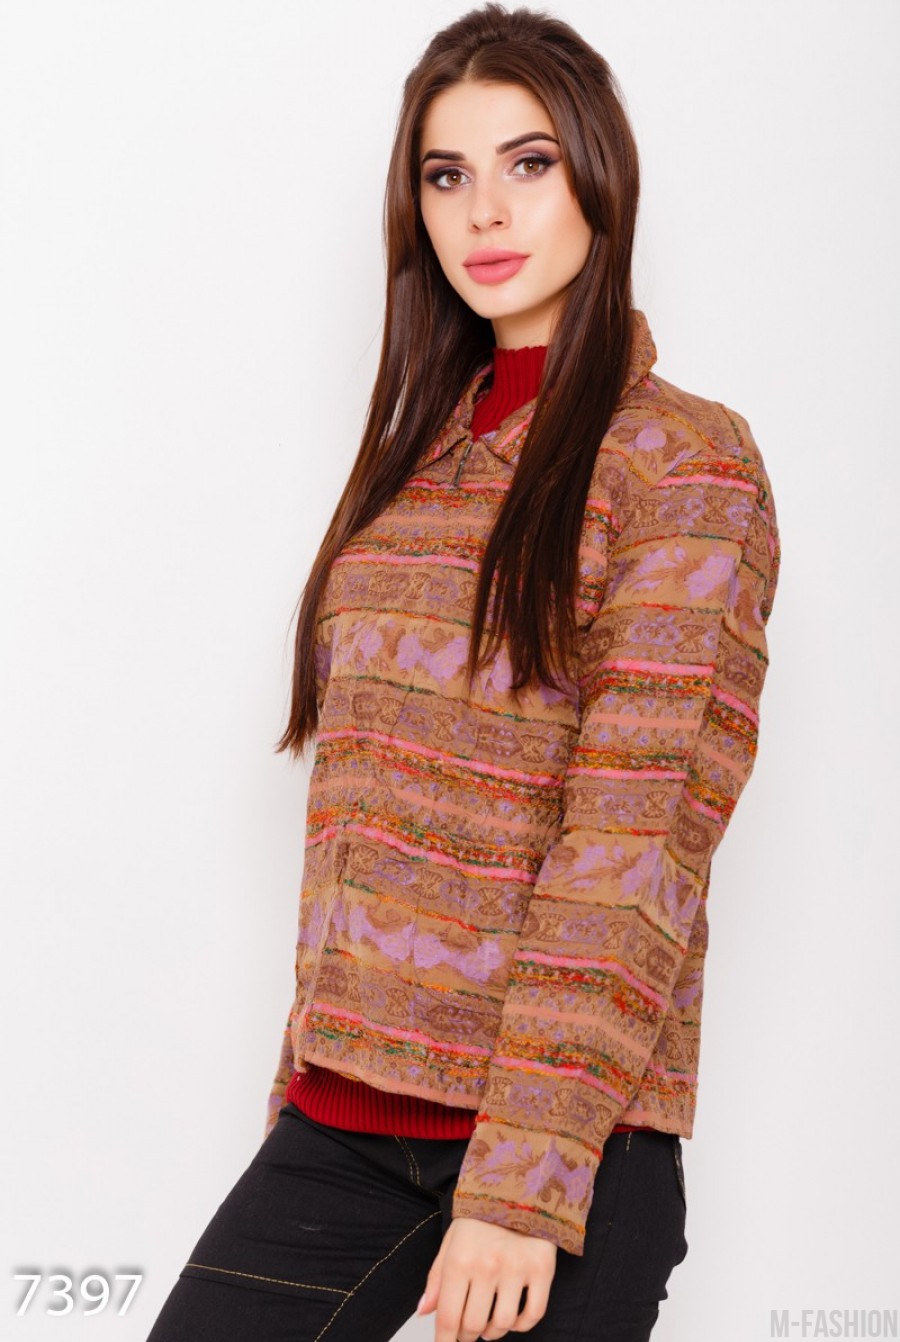 Цветная укороченная куртка-жакет на молнии с полосатой объемной вышивкой- Фото 2